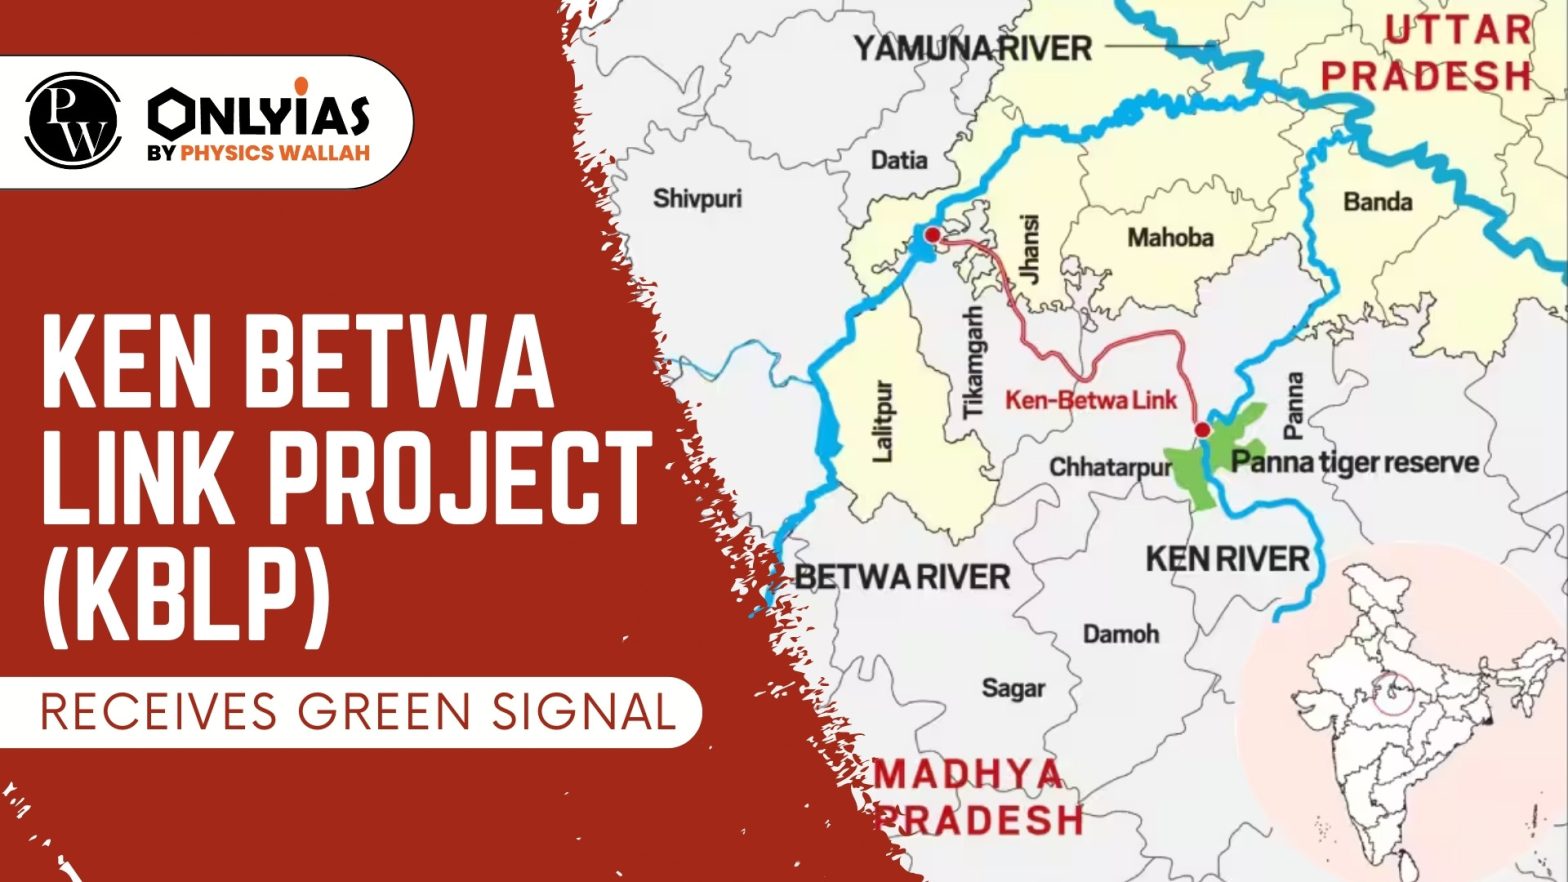 Ken Betwa Link Project (KBLP) Receives Green Signal